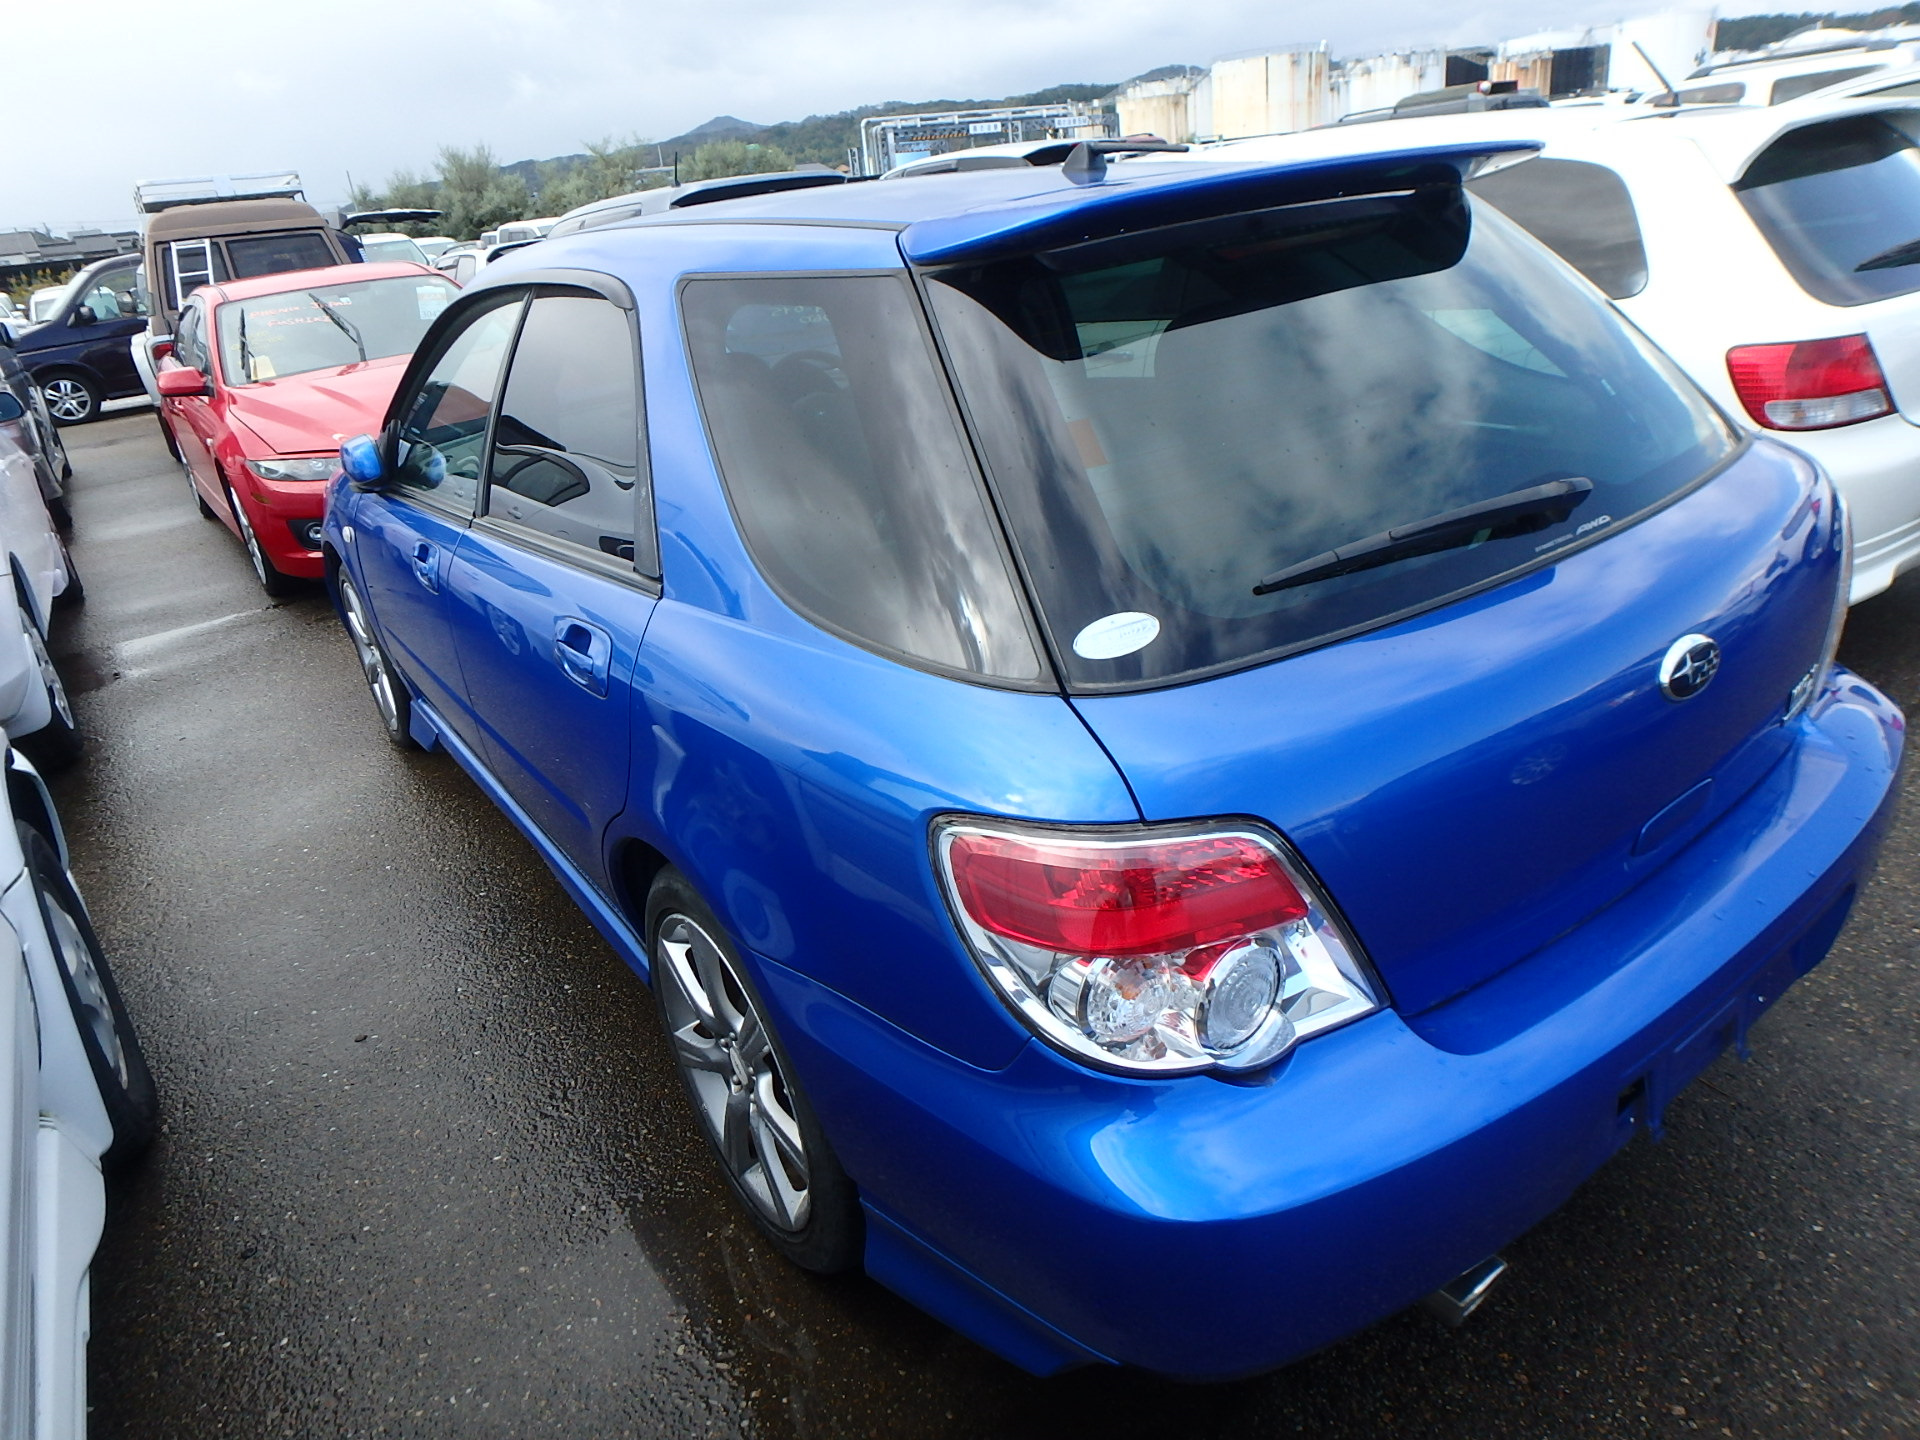 Купить субару в нижнем новгороде. Subaru Impreza 2007 зад. Субару Импреза 2007г. Импреза 2007 кузова. Subaru GGA.